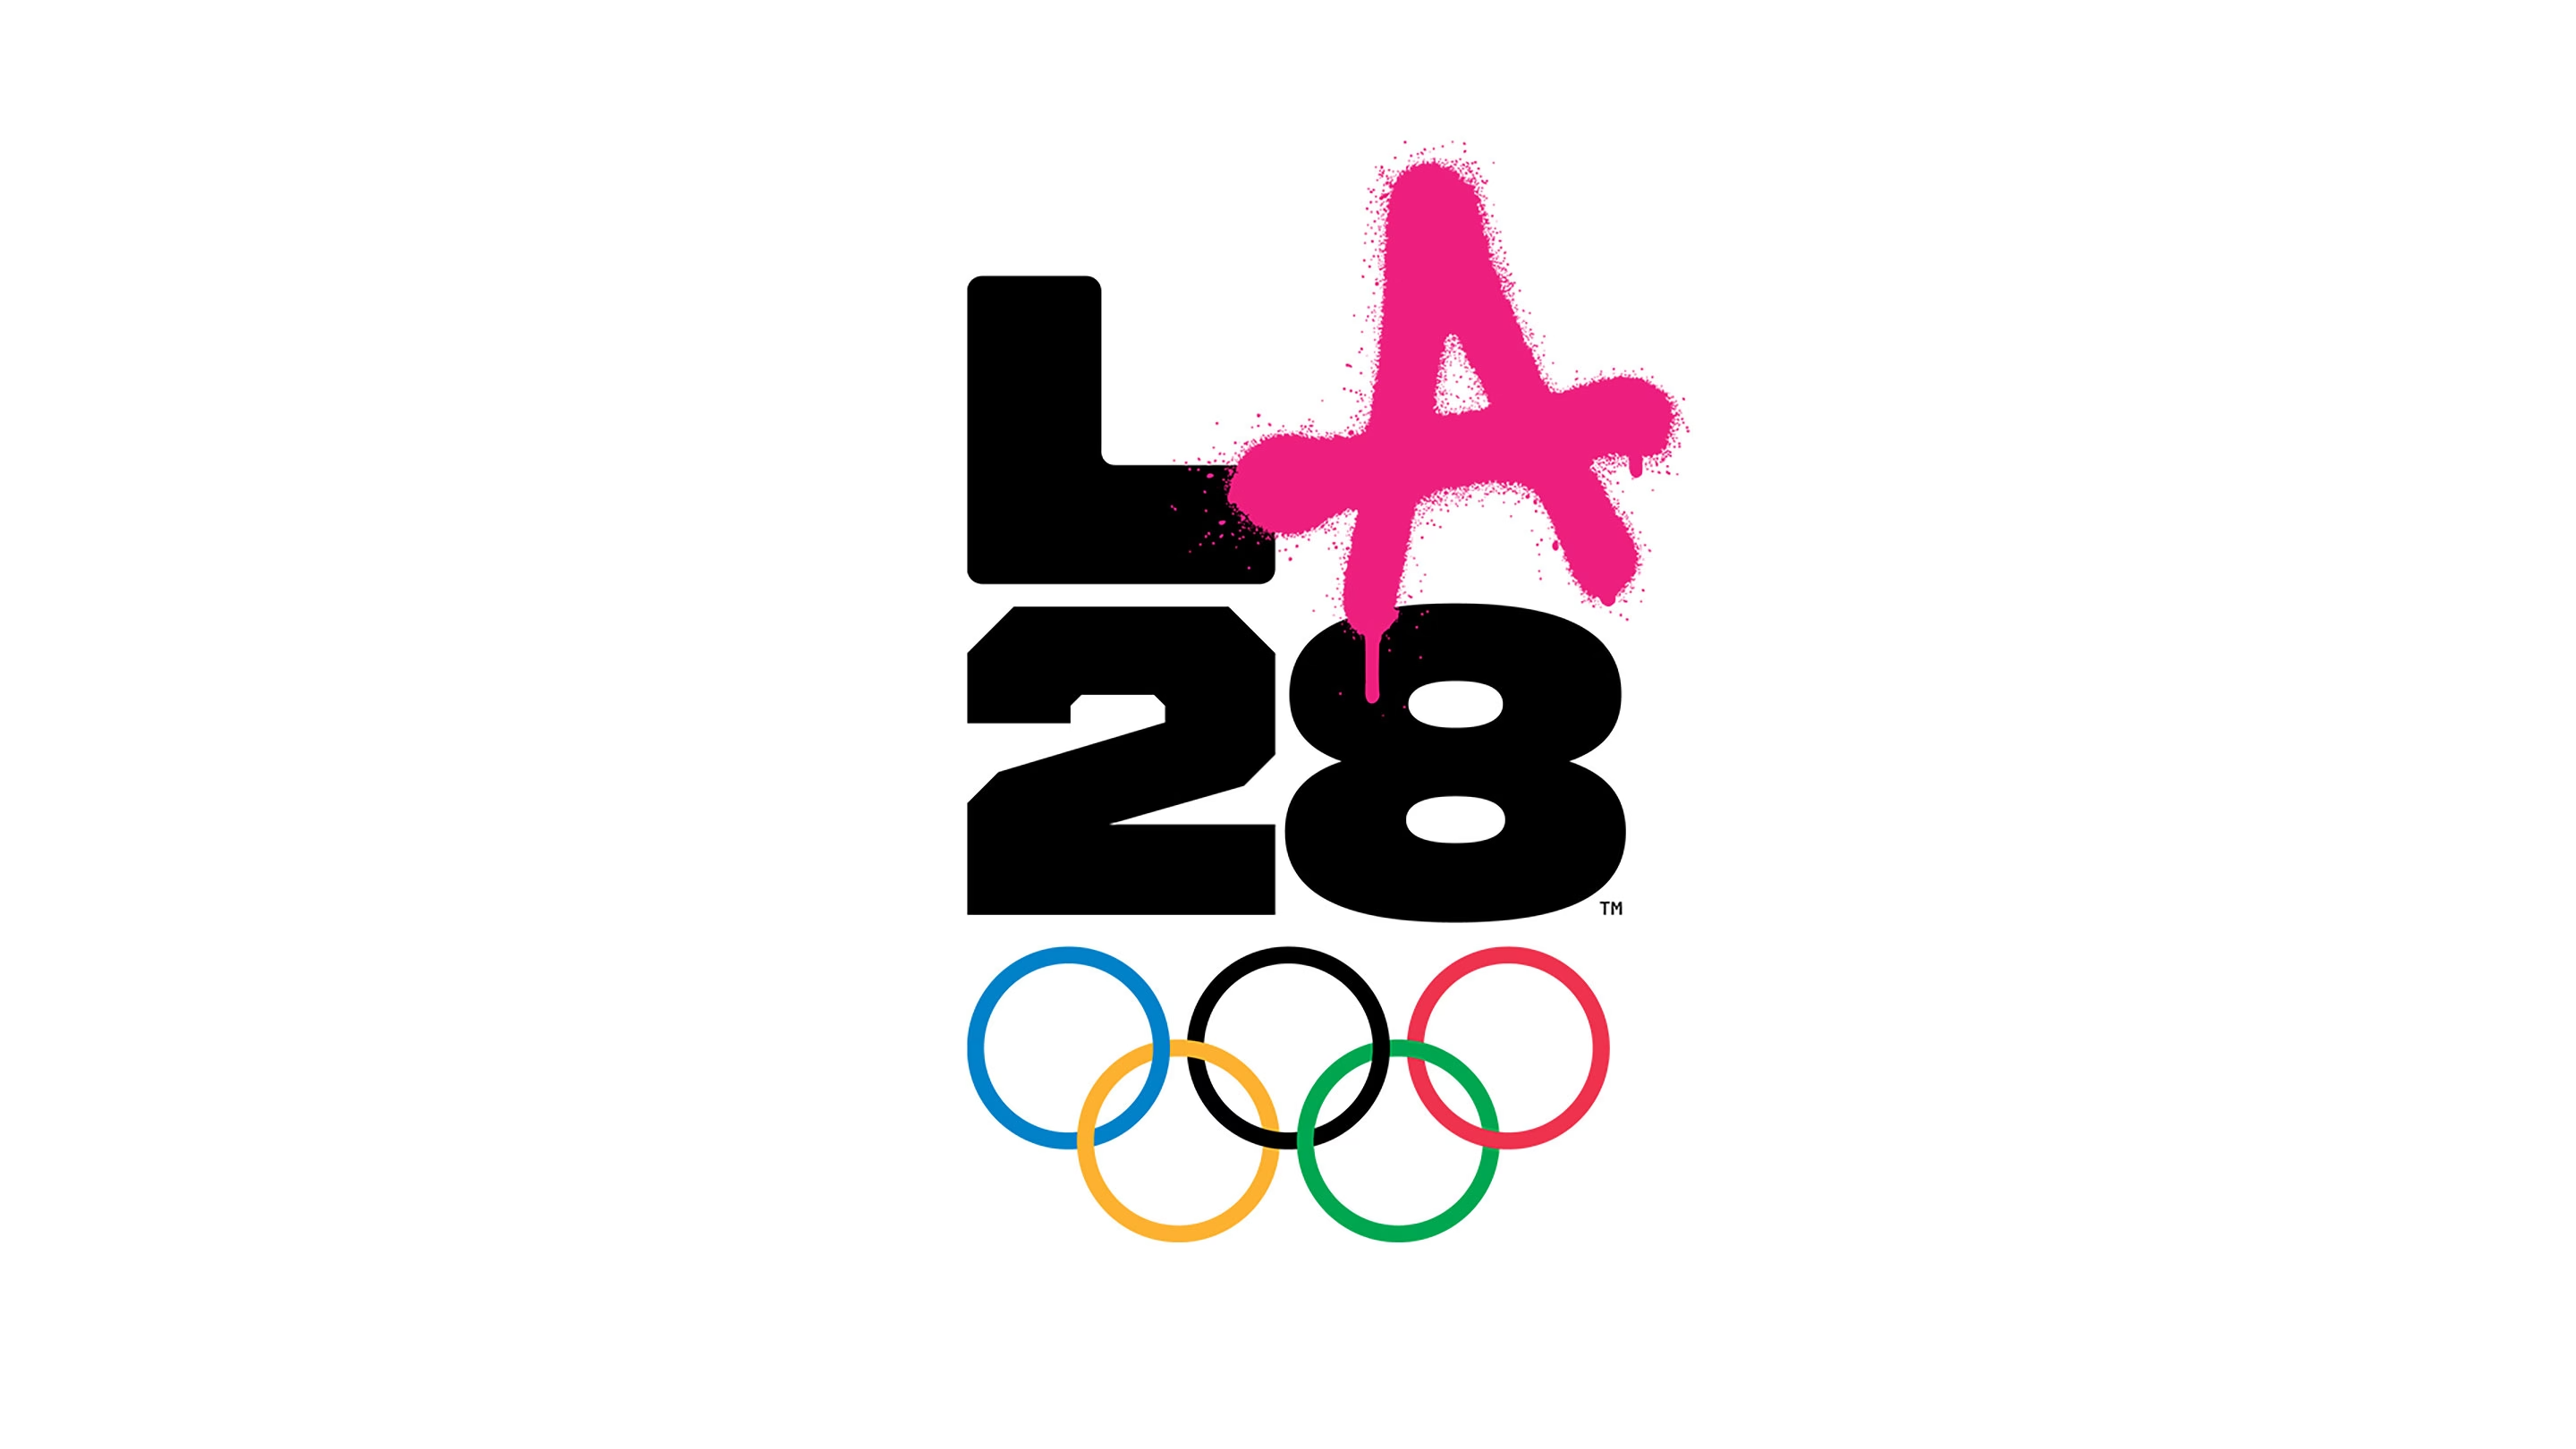 Los Angeles 2028 Olympics logo